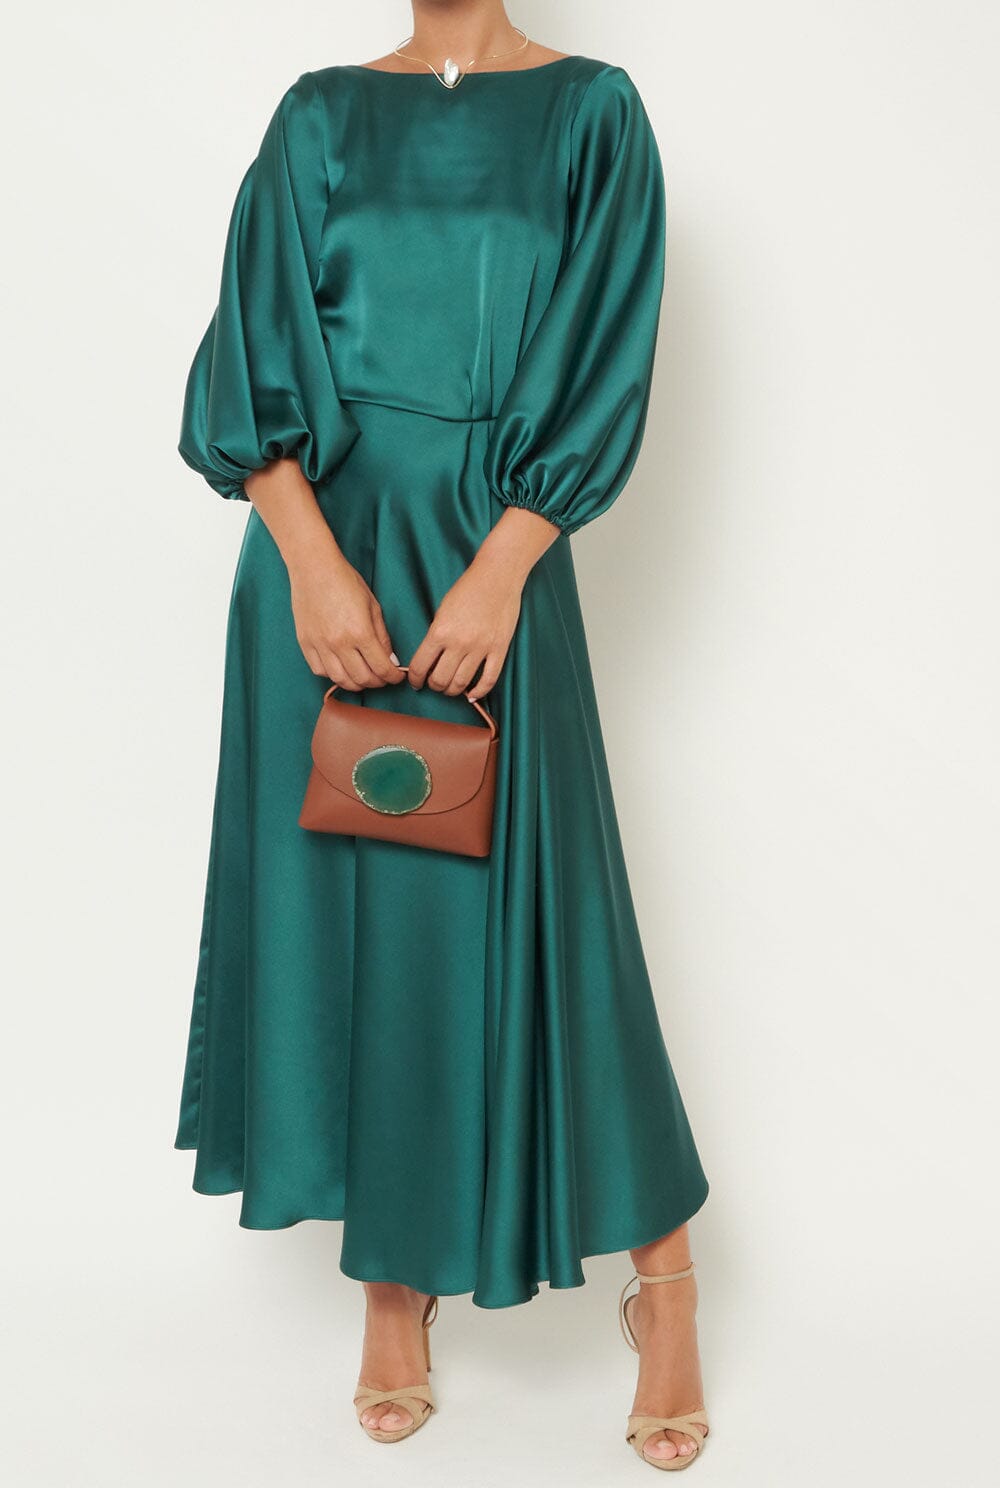 Vestido Tilda Verde Esmeralda Dresses Duyos 